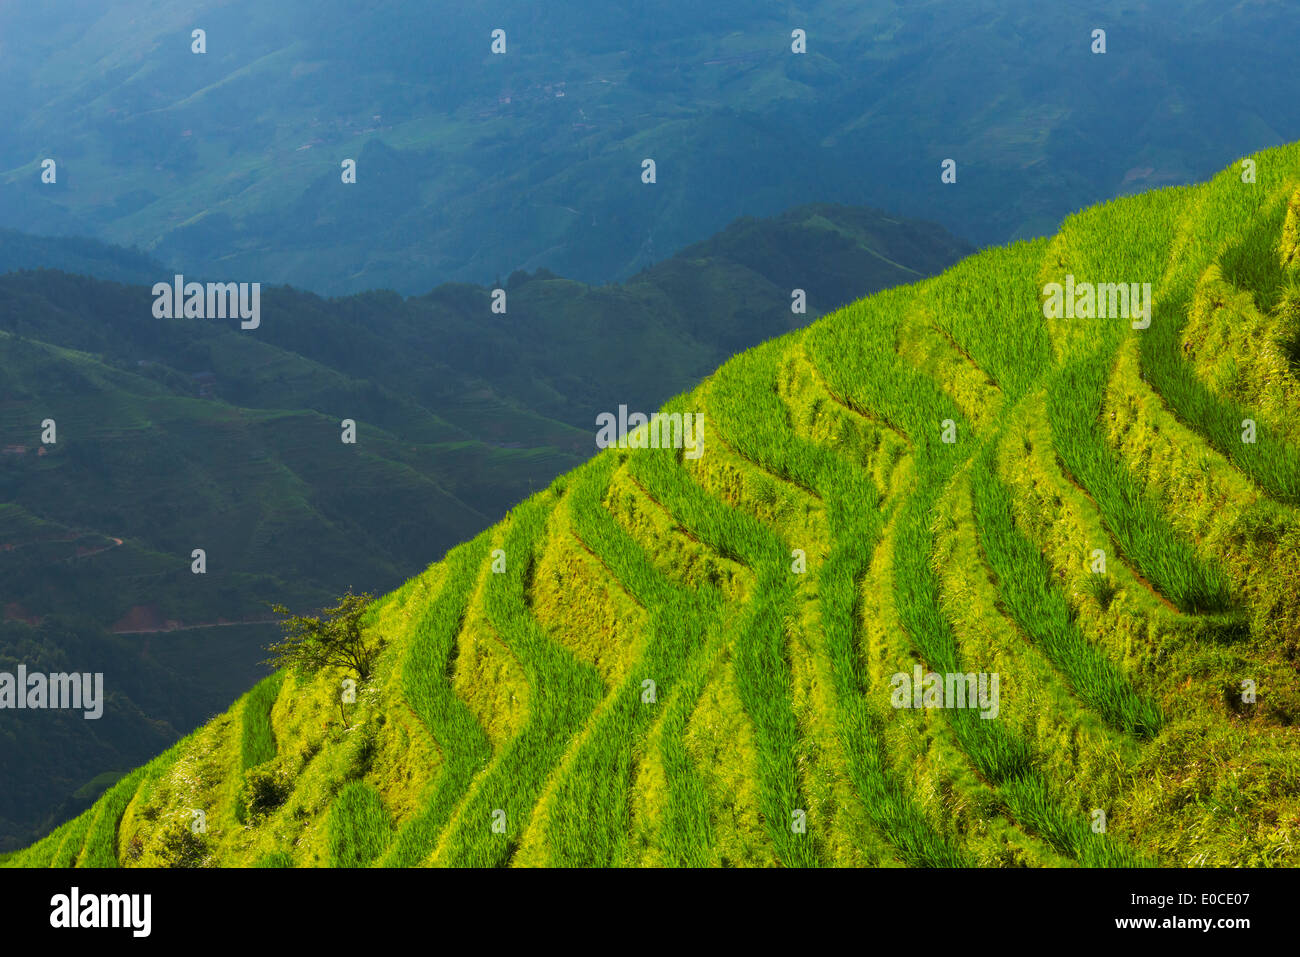 Rice terraces in the mountain, Longsheng, Guangxi Province, China Stock Photo